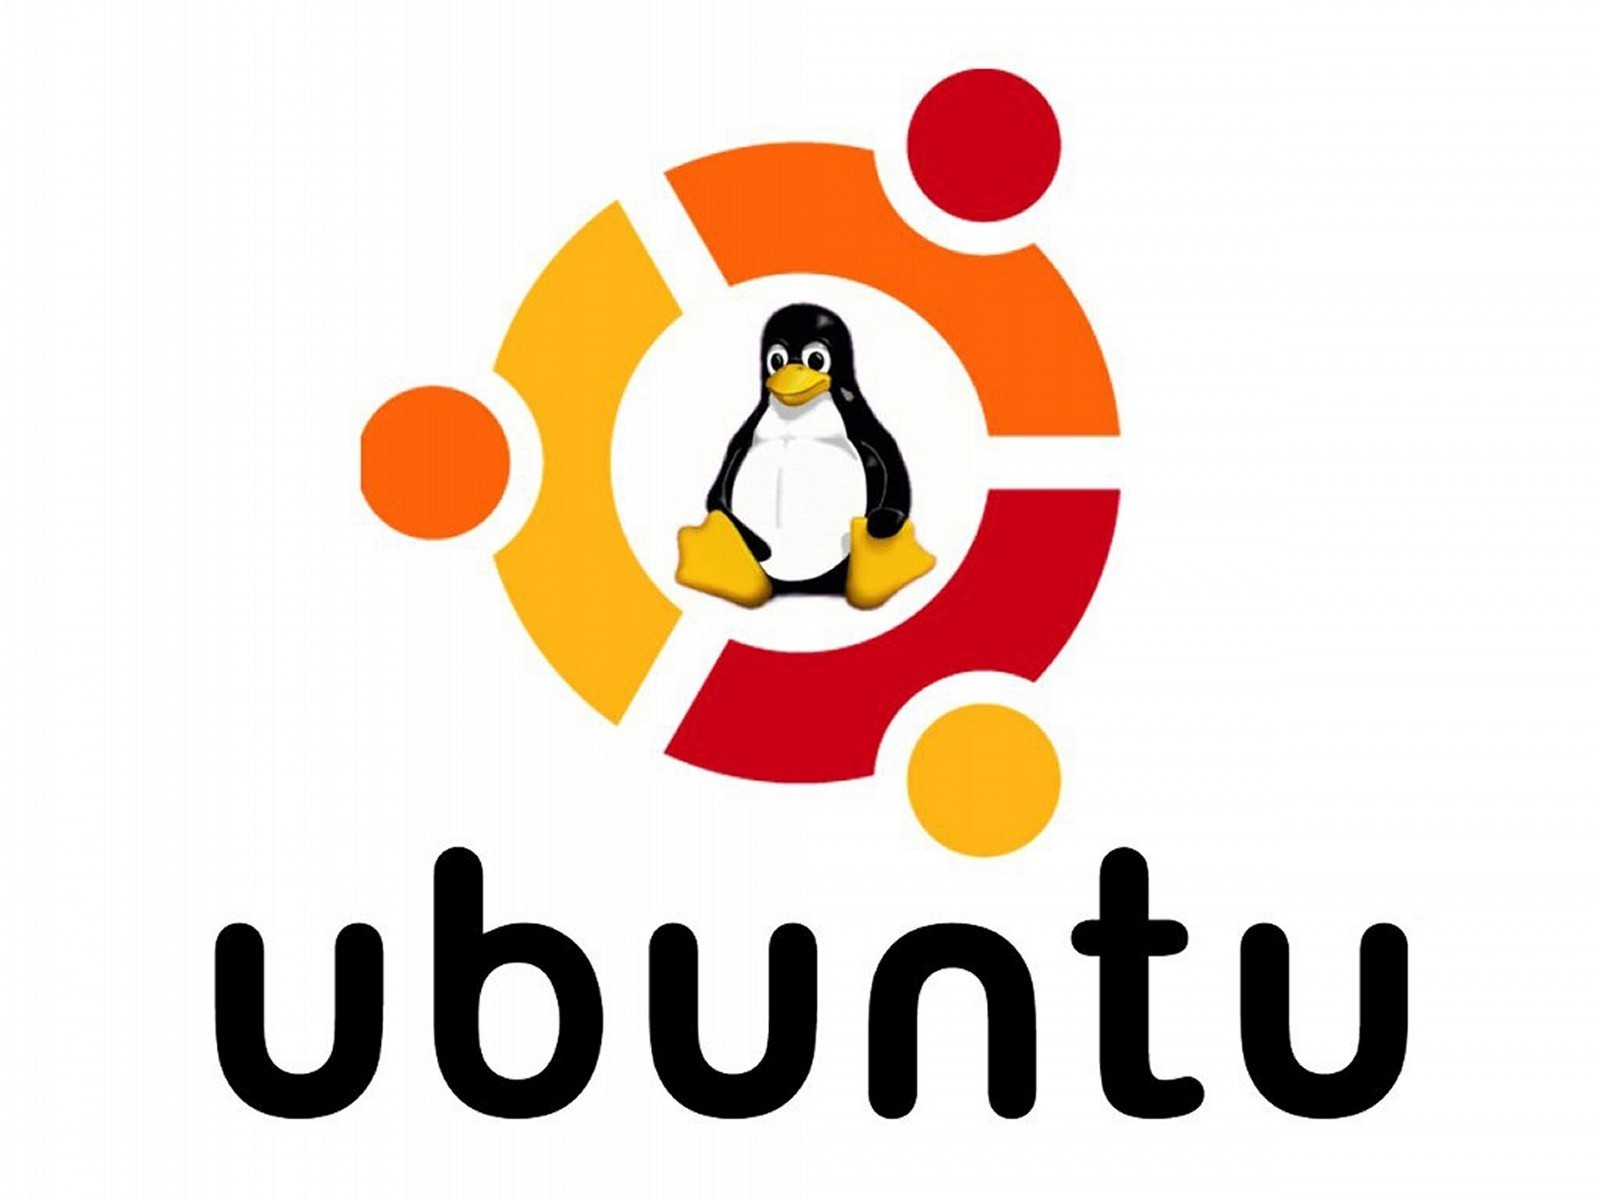 Linux ubuntu  Logos 